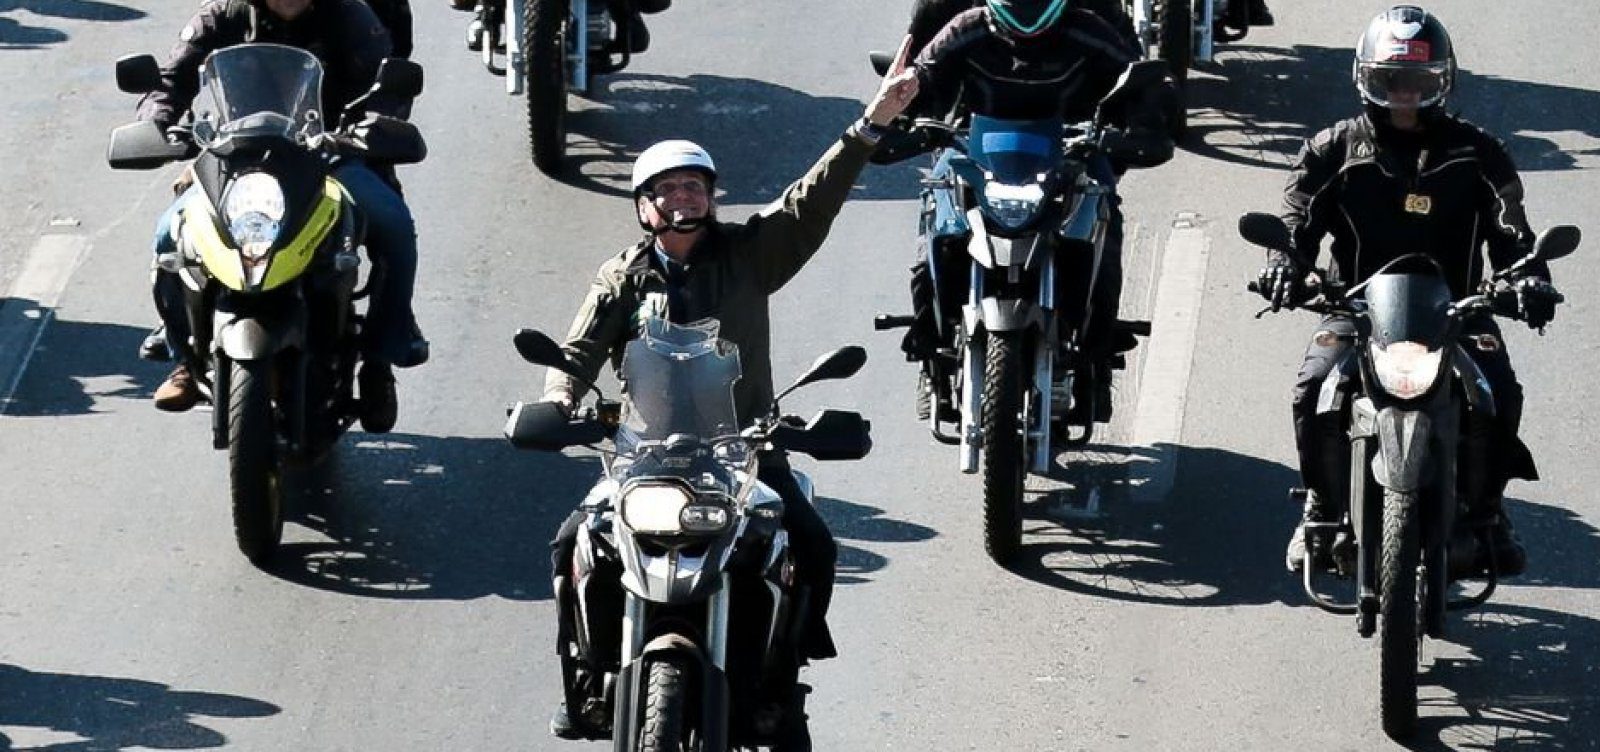 Gastos elevados de Bolsonaro coincidem com motociatas